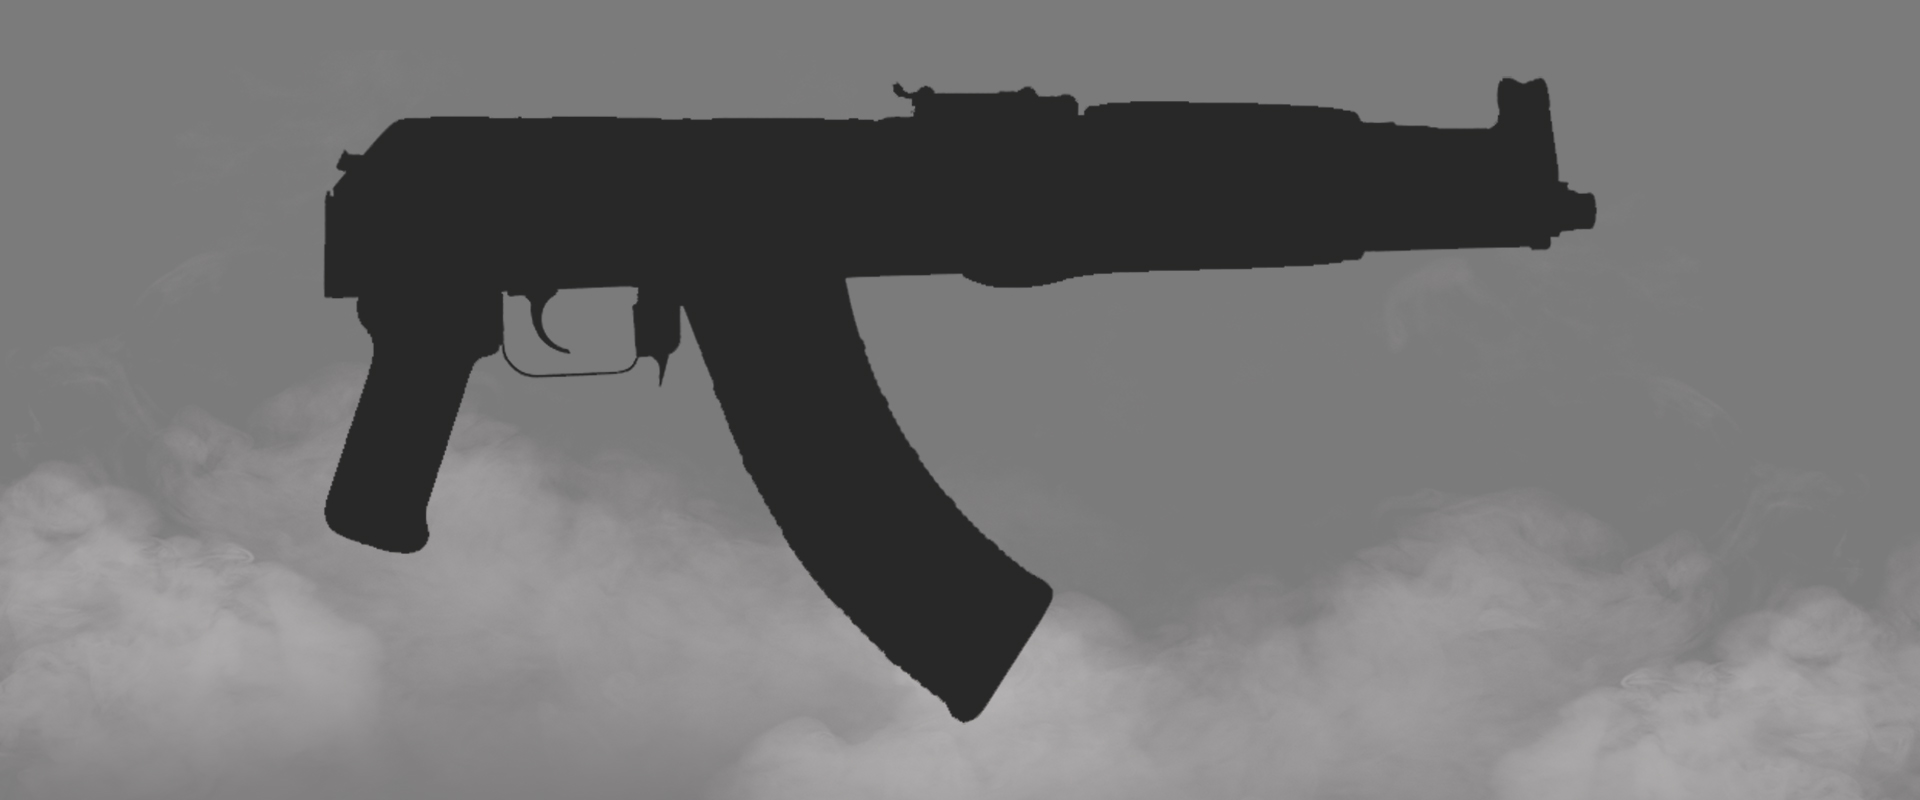 AK47/74 Pistols